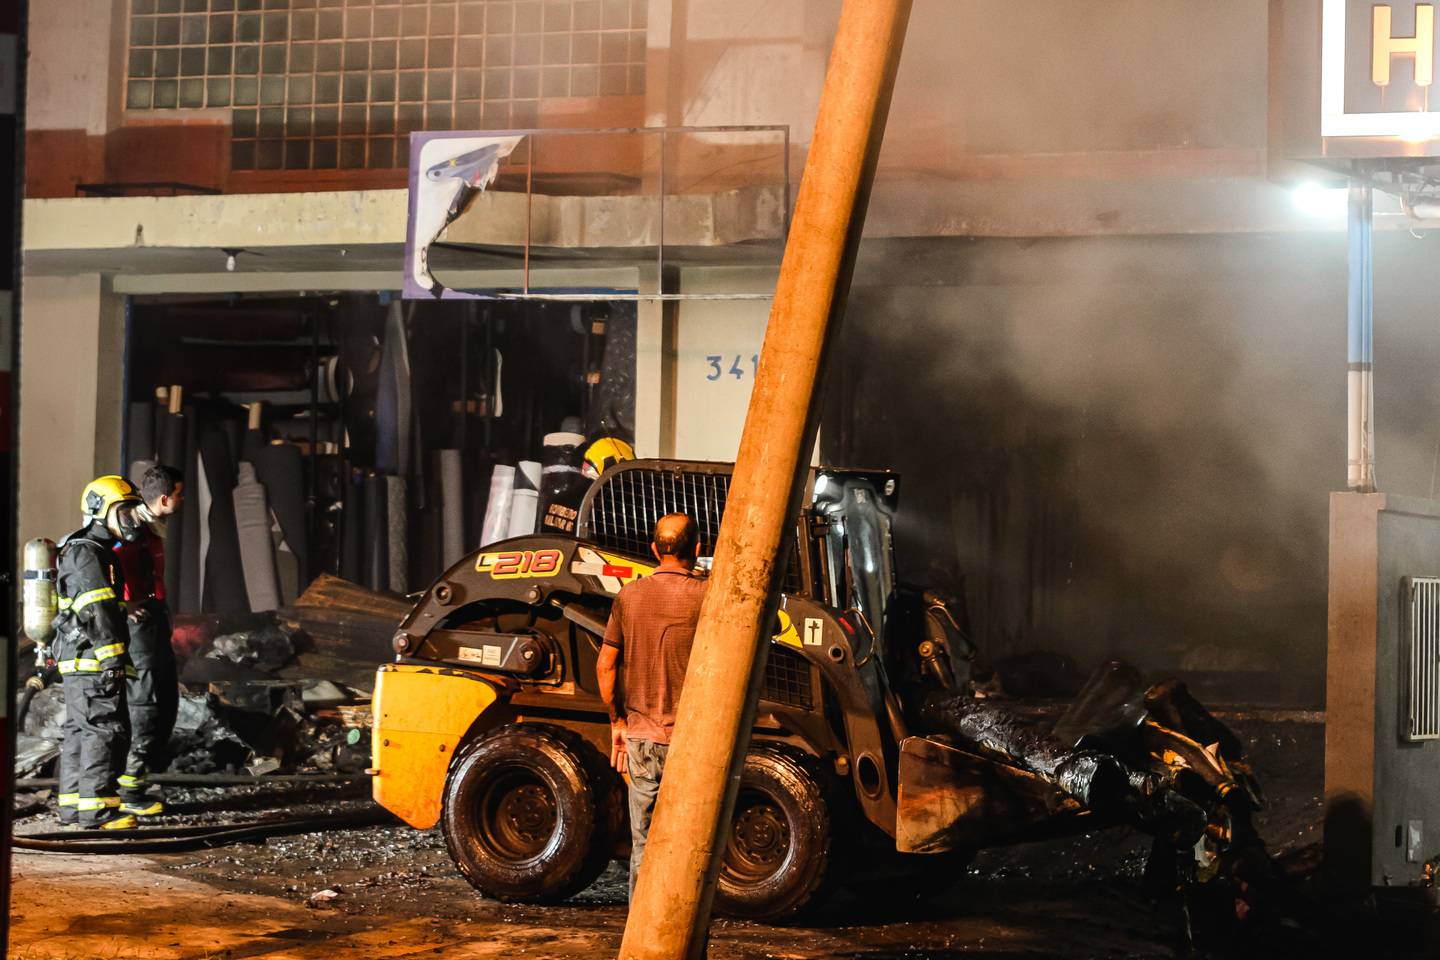 Máquina remove material da loja consumido pelo fogo. Foto: Tero Queiroz